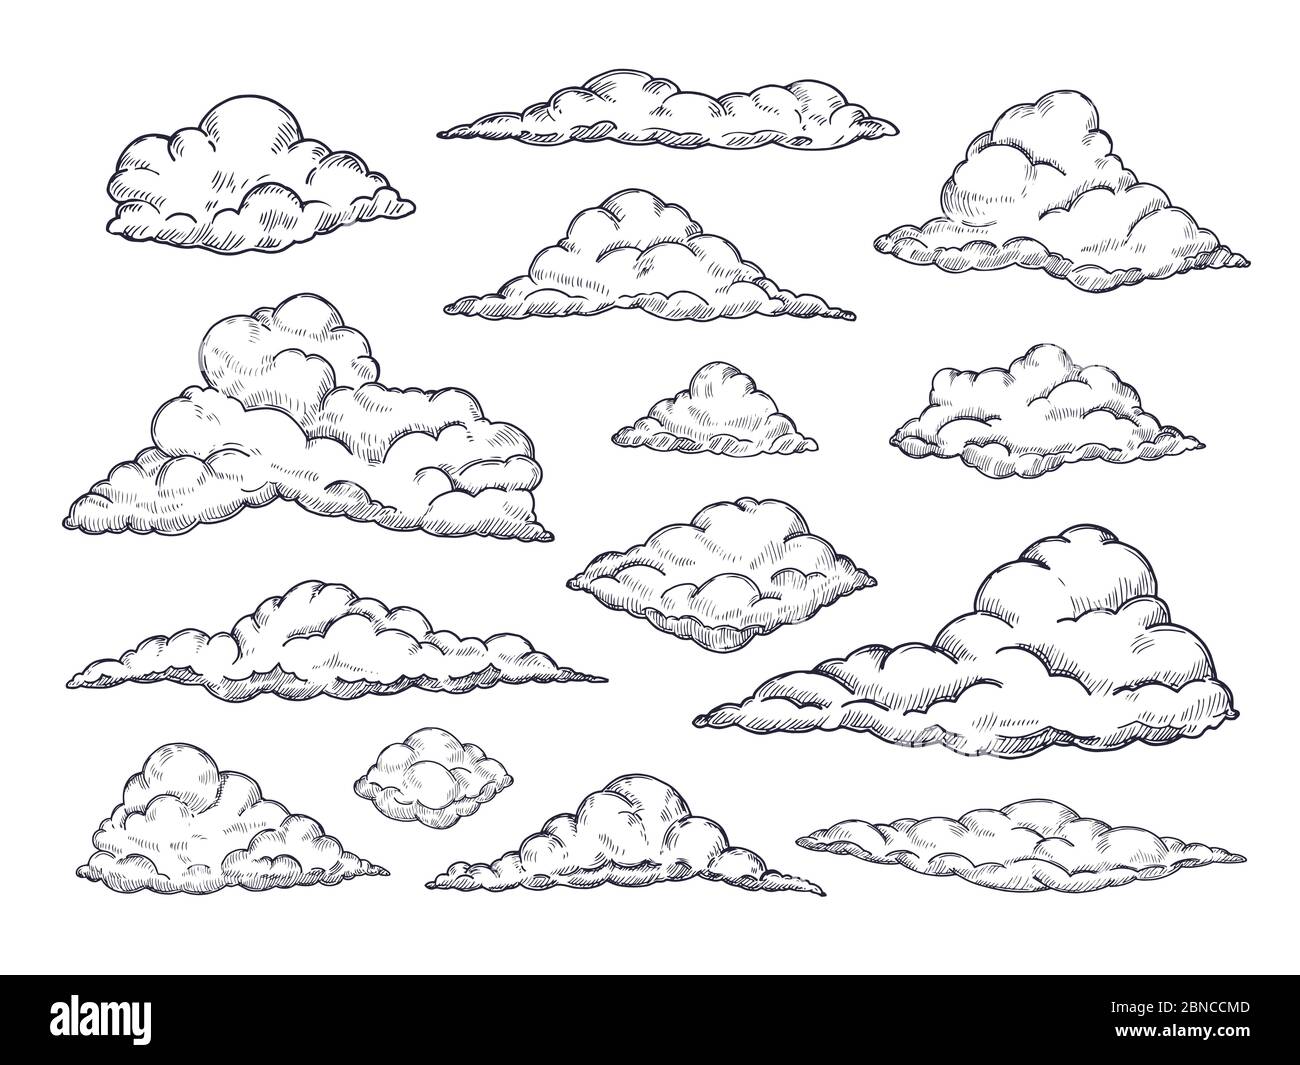 Skizzieren von Wolken. Handgezeichnete Wolkenlandschaft. Skizzieren Wolke Vintage Vektor-Sammlung. Illustration der Wolkenform der Sammlung Stock Vektor